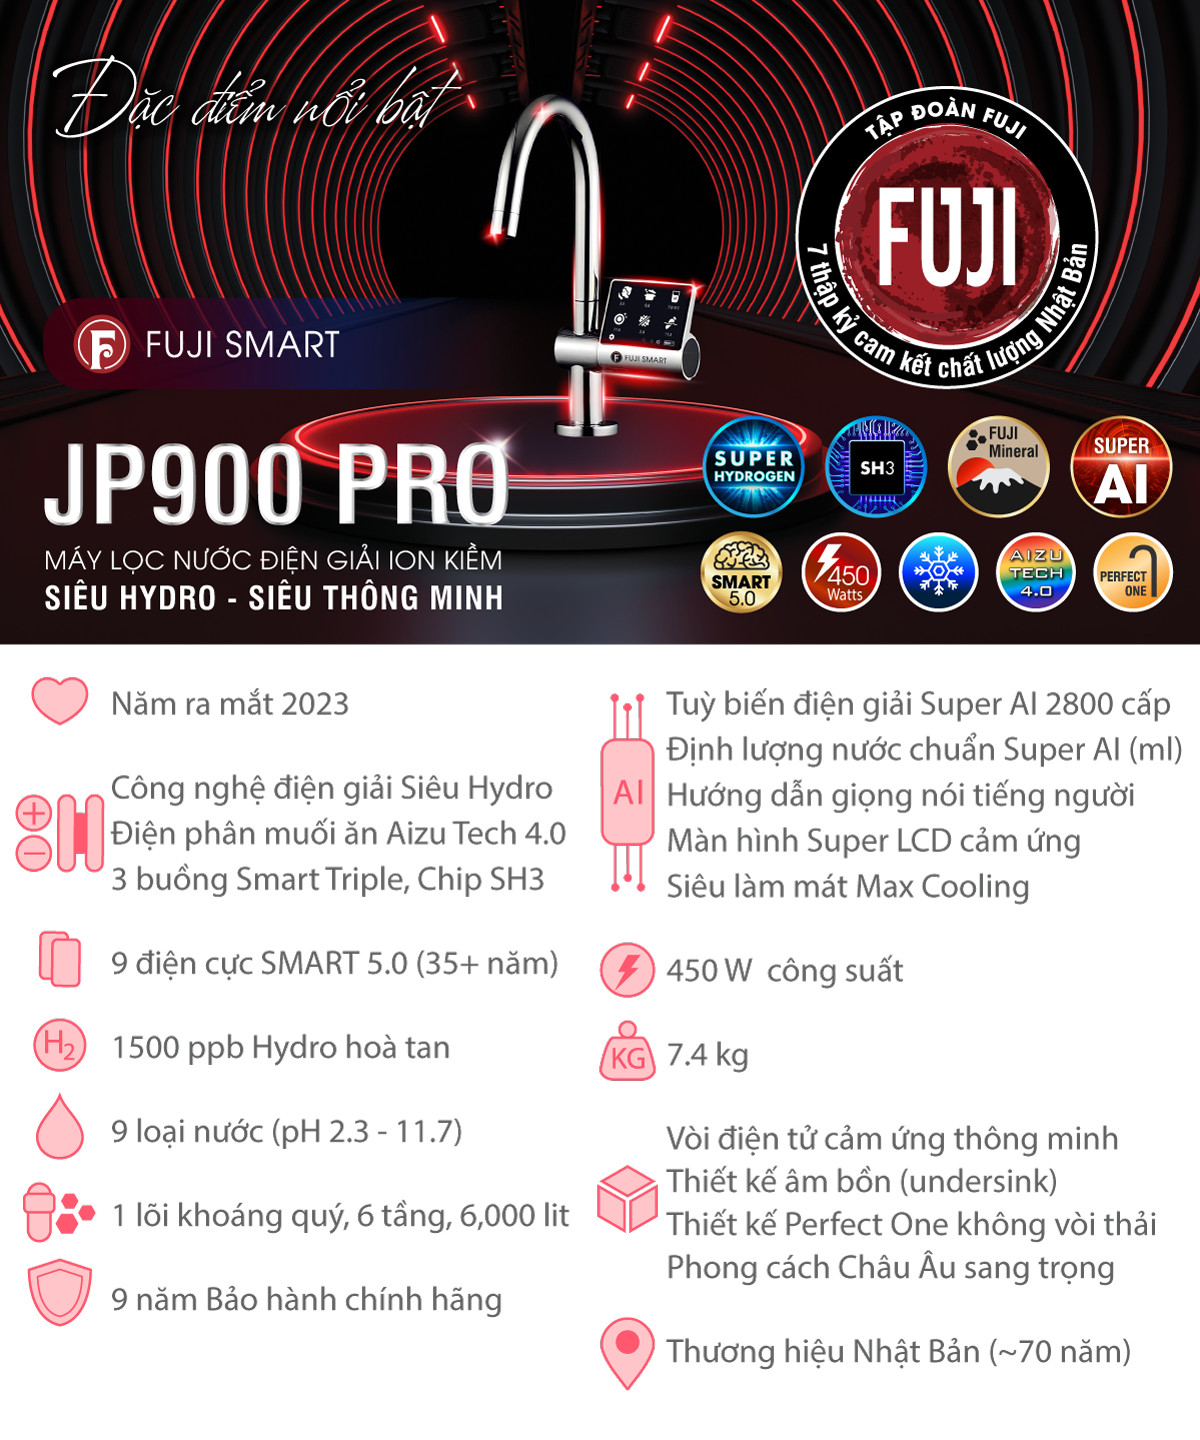 Máy lọc nước ion kiềm Fuji Smart JP900 Pro hội tụ tinh hoa công nghệ điện giải số 1 thế giới